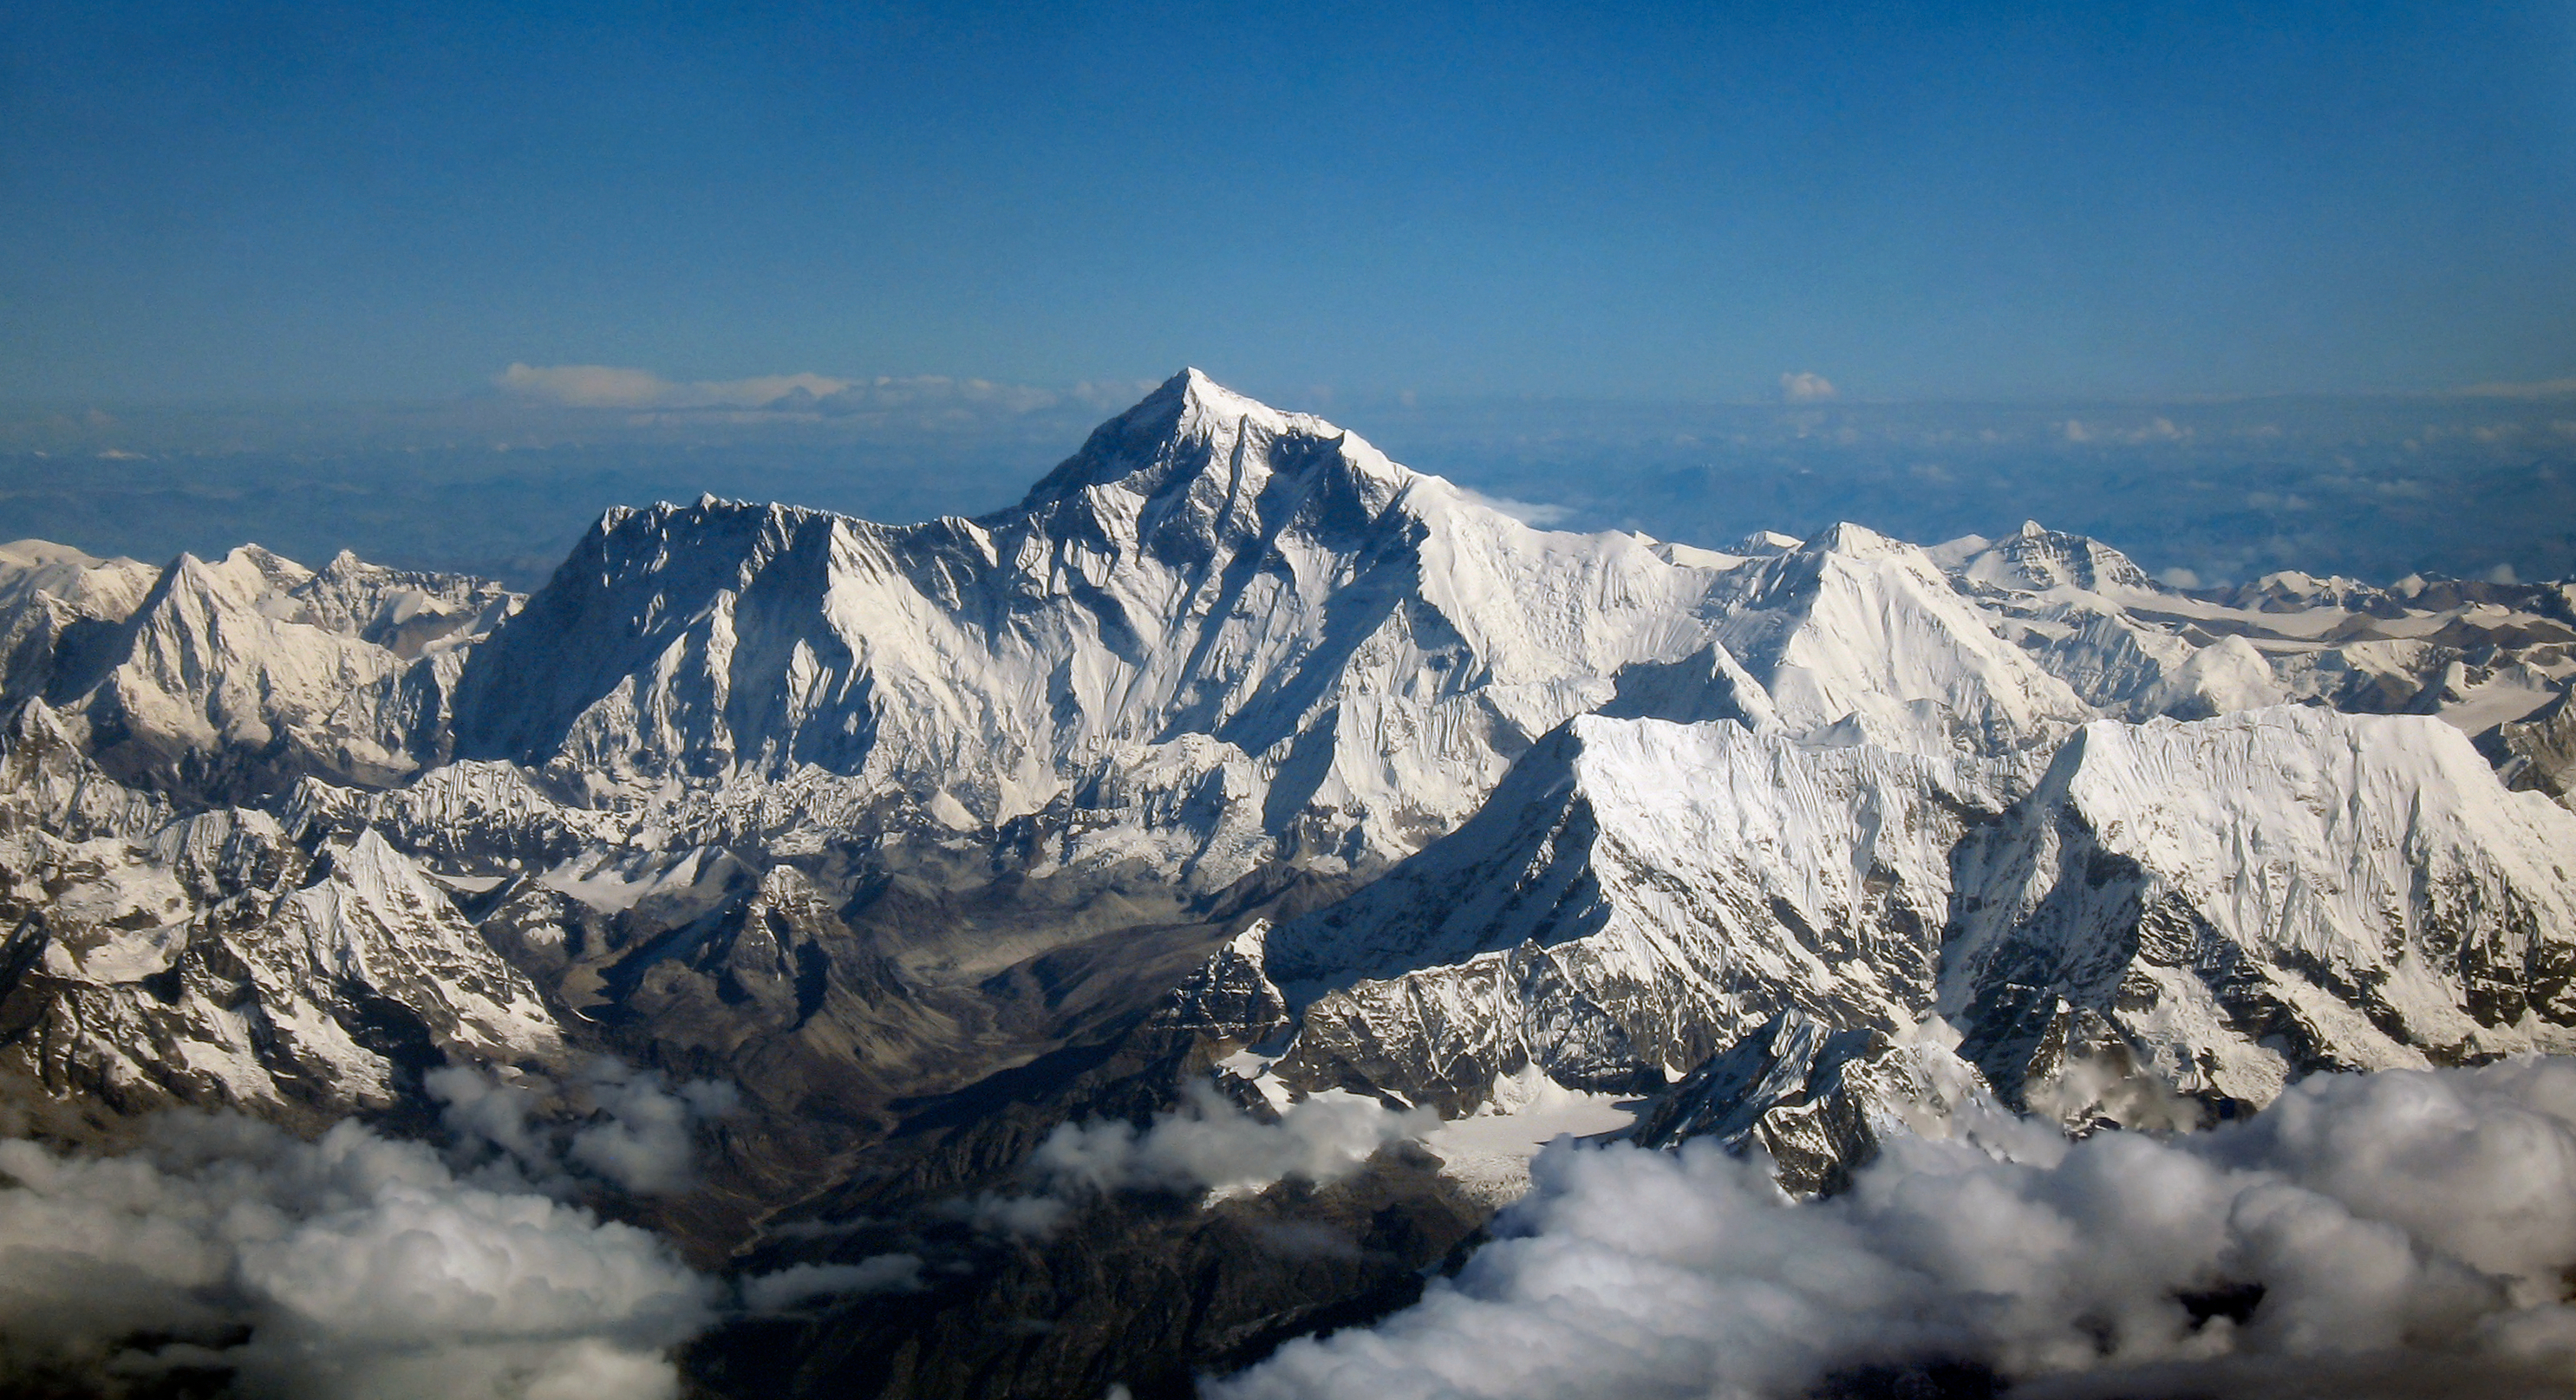 فيديو وصور عن جبل إيفرست Mount Everest ، أعلى قمة على سطح الارض